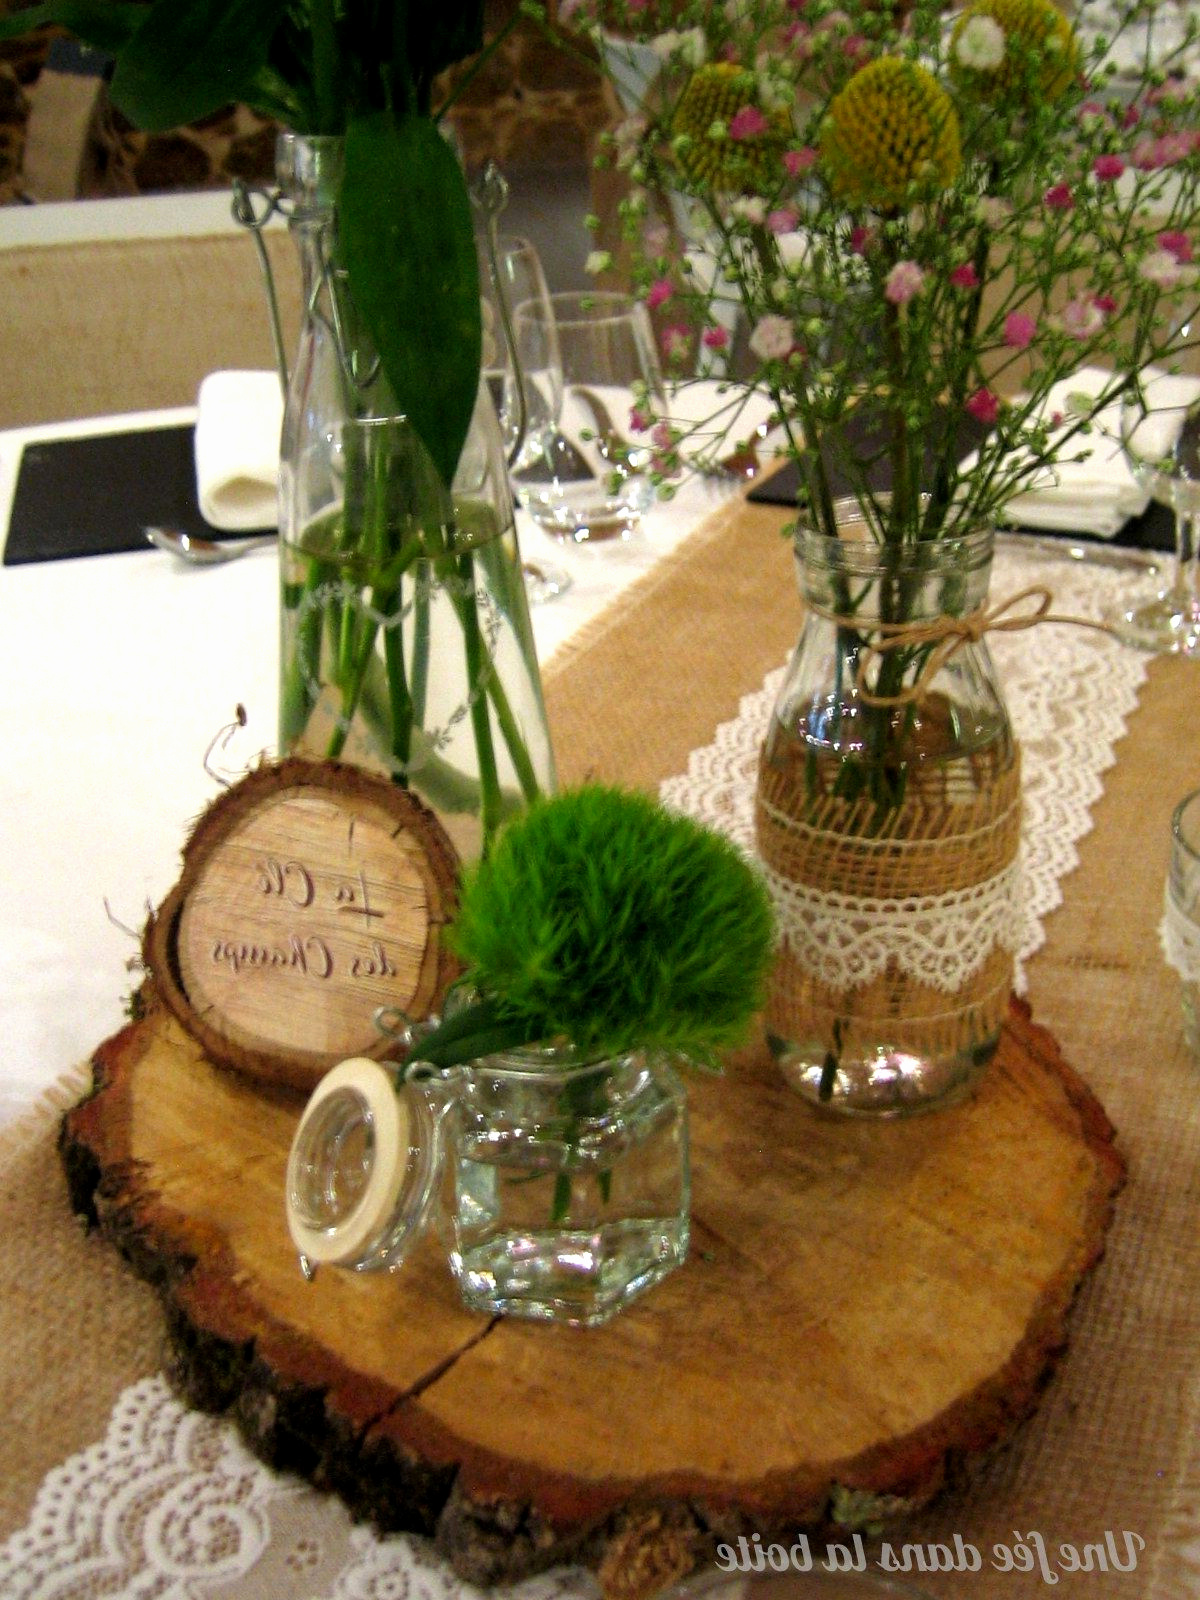 deco table champetre pas chere elegant idee deco de table mariage pas cher unique decoration salle de of deco table champetre pas chere